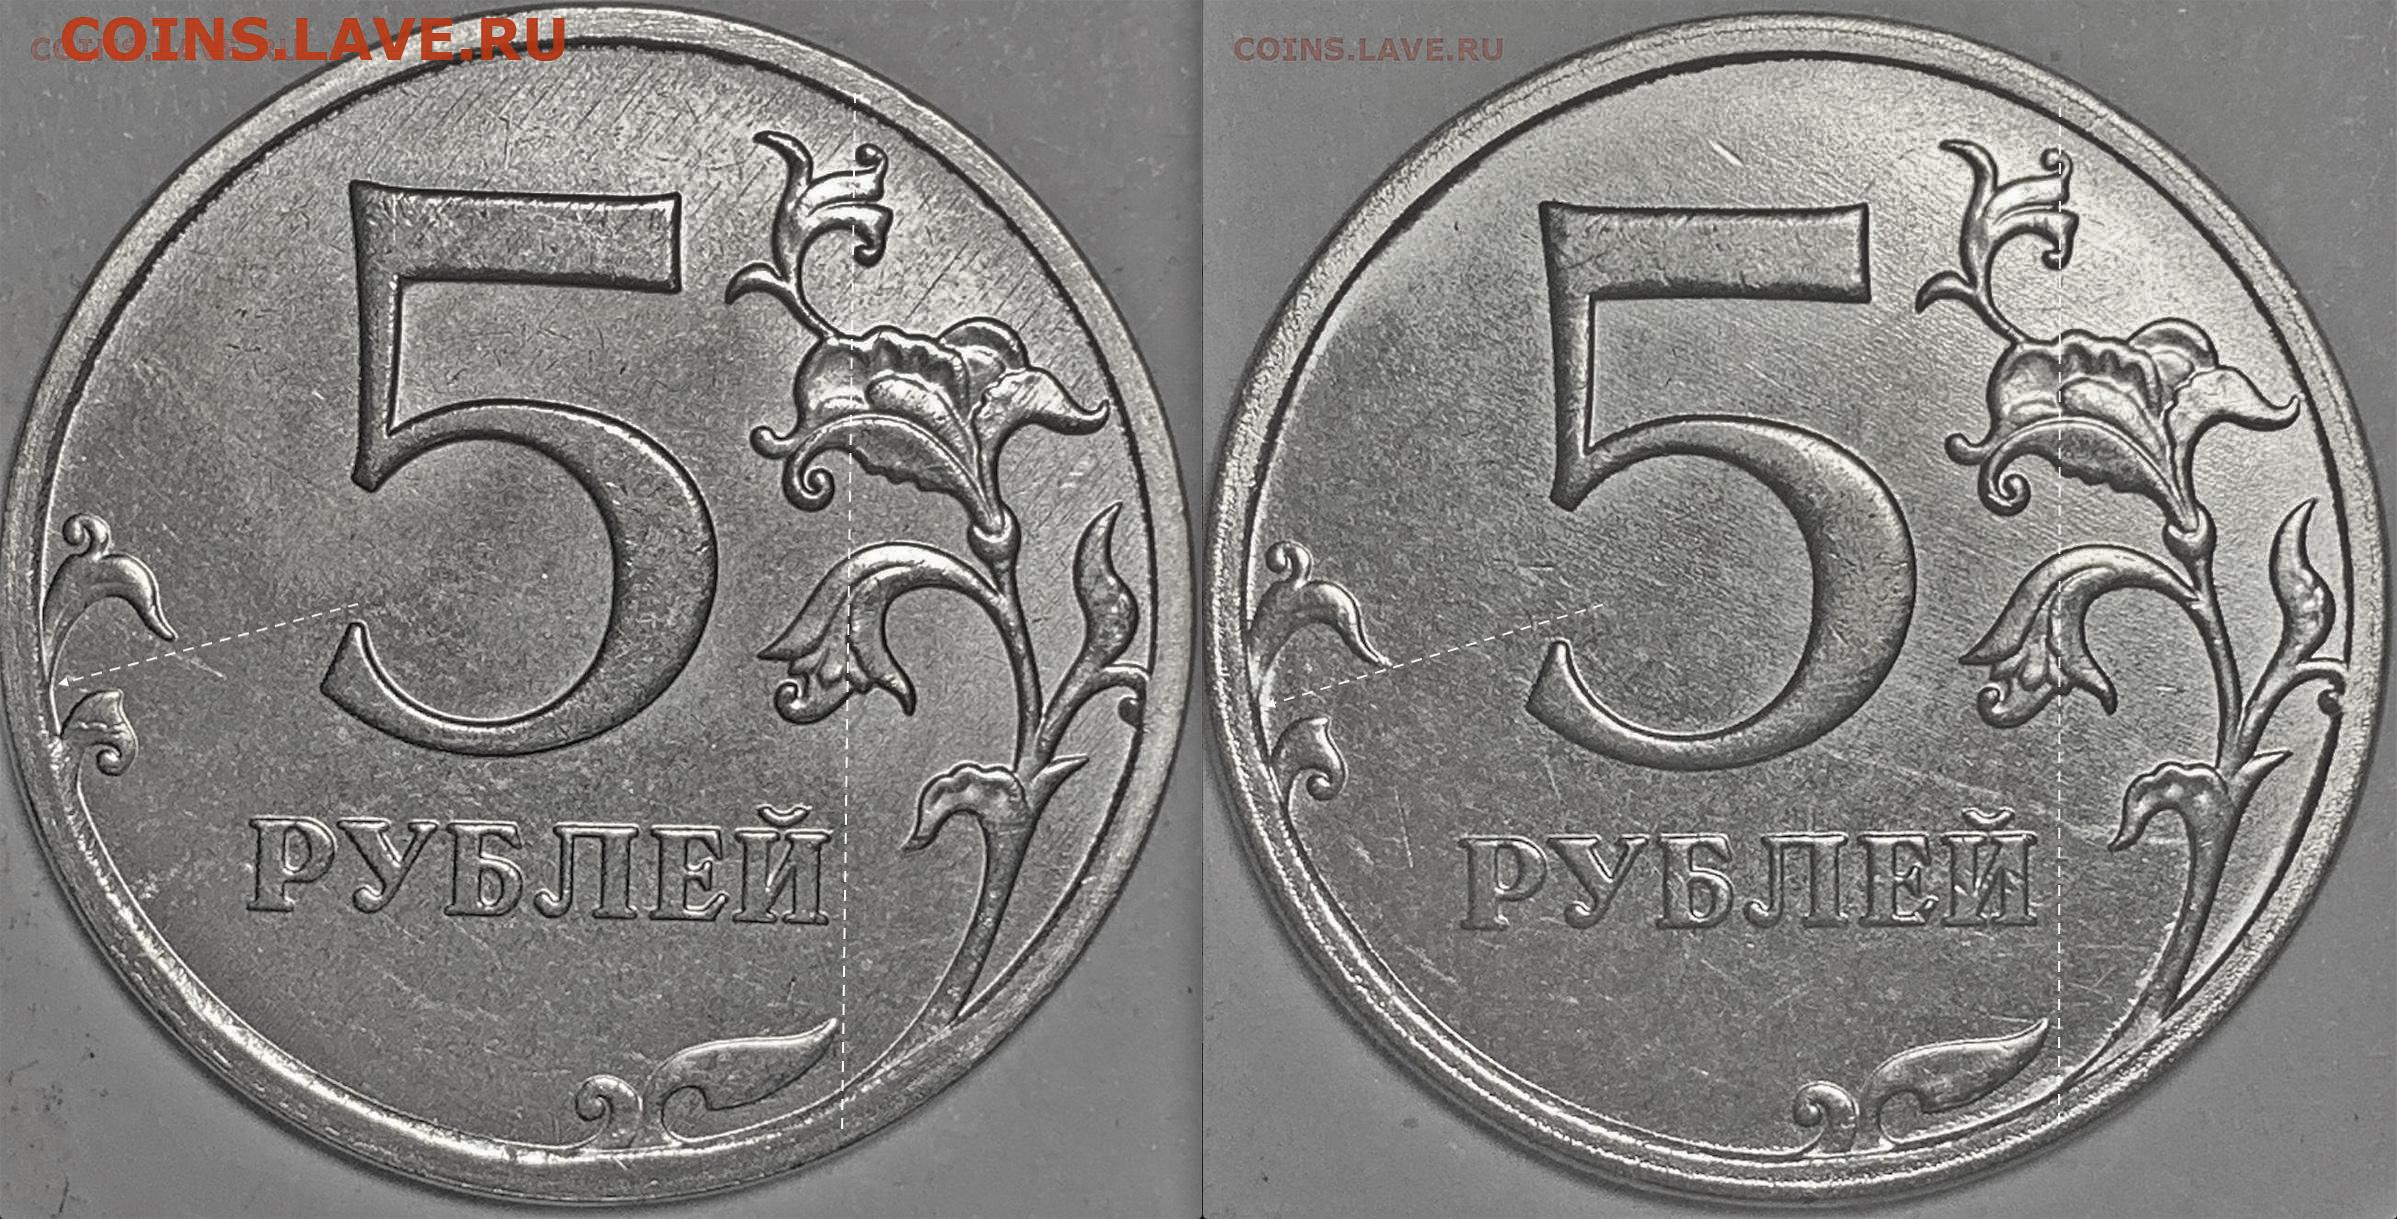 75 рублей 8. 5 Рублей 2021 года. Разновидности 5 рублей 2021 года. Монета 20 рублей 2021. 5 Рублей 2021 характеристики.